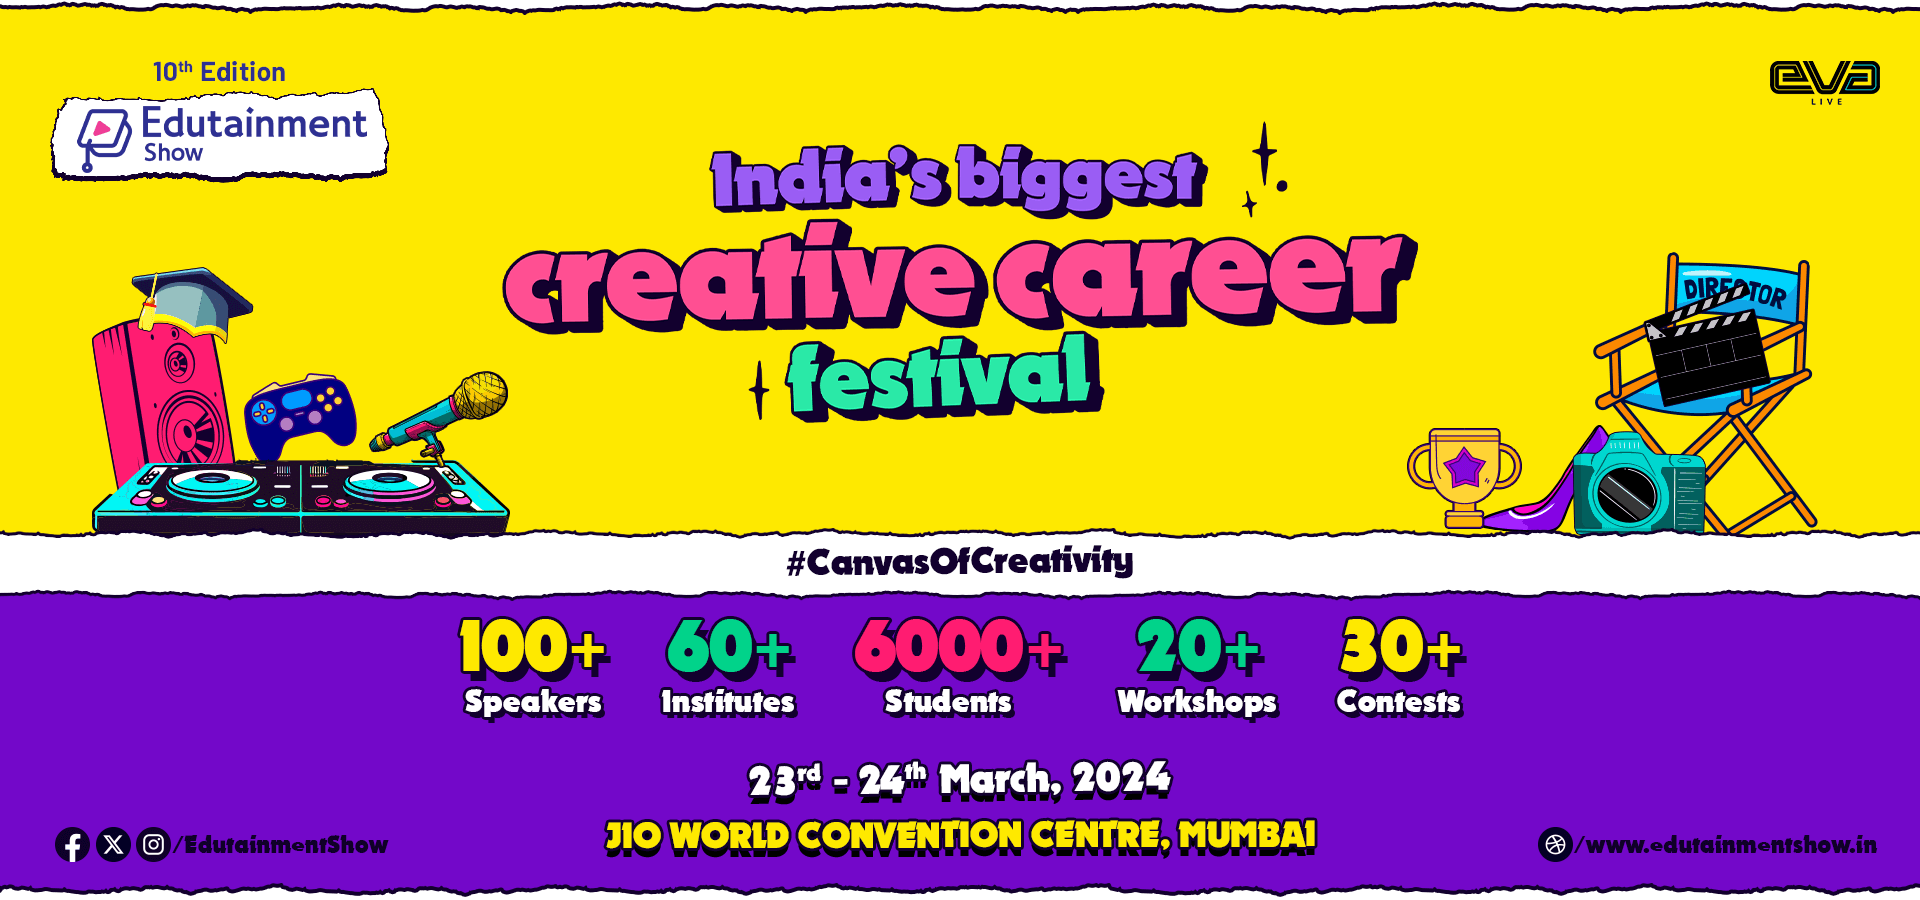 Edutainment_India’s Biggest Creative Career Festival